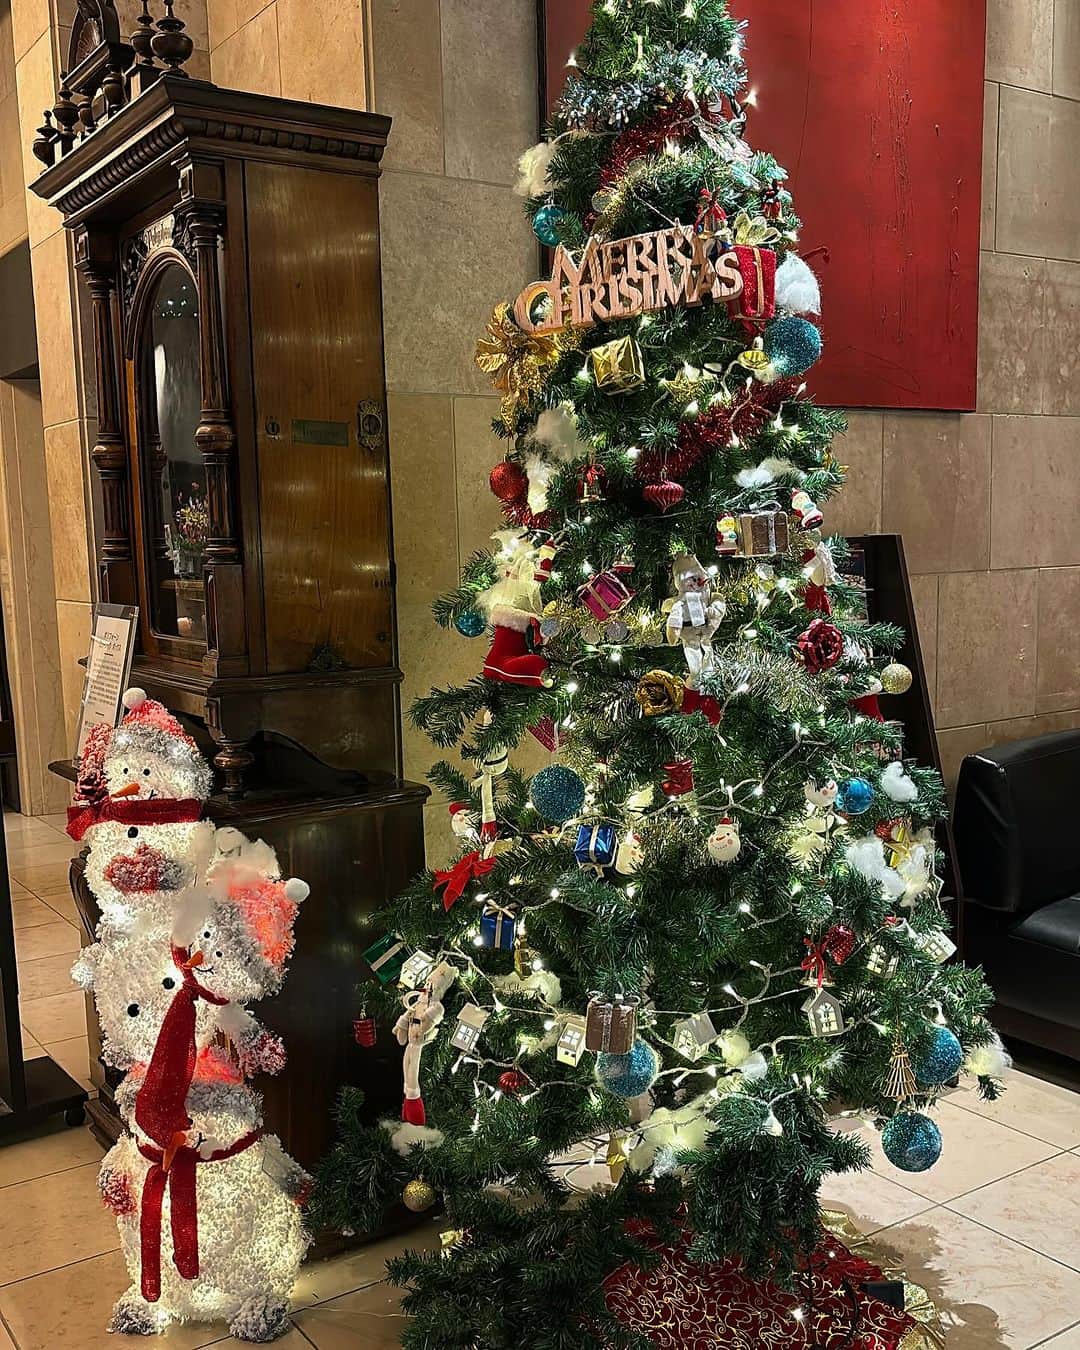 ホテルウィングインターナショナルプレミアム東京四谷のインスタグラム：「. 皆様こんにちは！☀️  朝晩は肌寒い日が増えてきましたね🍃  さて、四谷店では現在クリスマスツリーを飾っております！🎄  実はハロウィンが終わった次の日、11月1日から設置しています☺️  館内もクリスマス装飾をしており、四谷店はもうすっかりクリスマス気分です✨  クリスマス限定宿泊プランも販売しており、公式HPからご予約いただけますので是非ご利用くださいませ！  ＊・＊・＊・＊・＊・＊・＊・＊・＊  #hotelwing であなたの滞在の様子を ぜひシェアしてください！ Please share your stay at hotelwing!  ＊・＊・＊・＊・＊・＊・＊・＊・＊  #ホテルウィング東京四谷　 #ホテルウィング四谷　#ホテルウィング #hotelwing #hotelwingyotsuya  #ホテルステイ　#東京ホテル　#四谷　#四谷三丁目 #クリスマス　#クリスマスツリー」